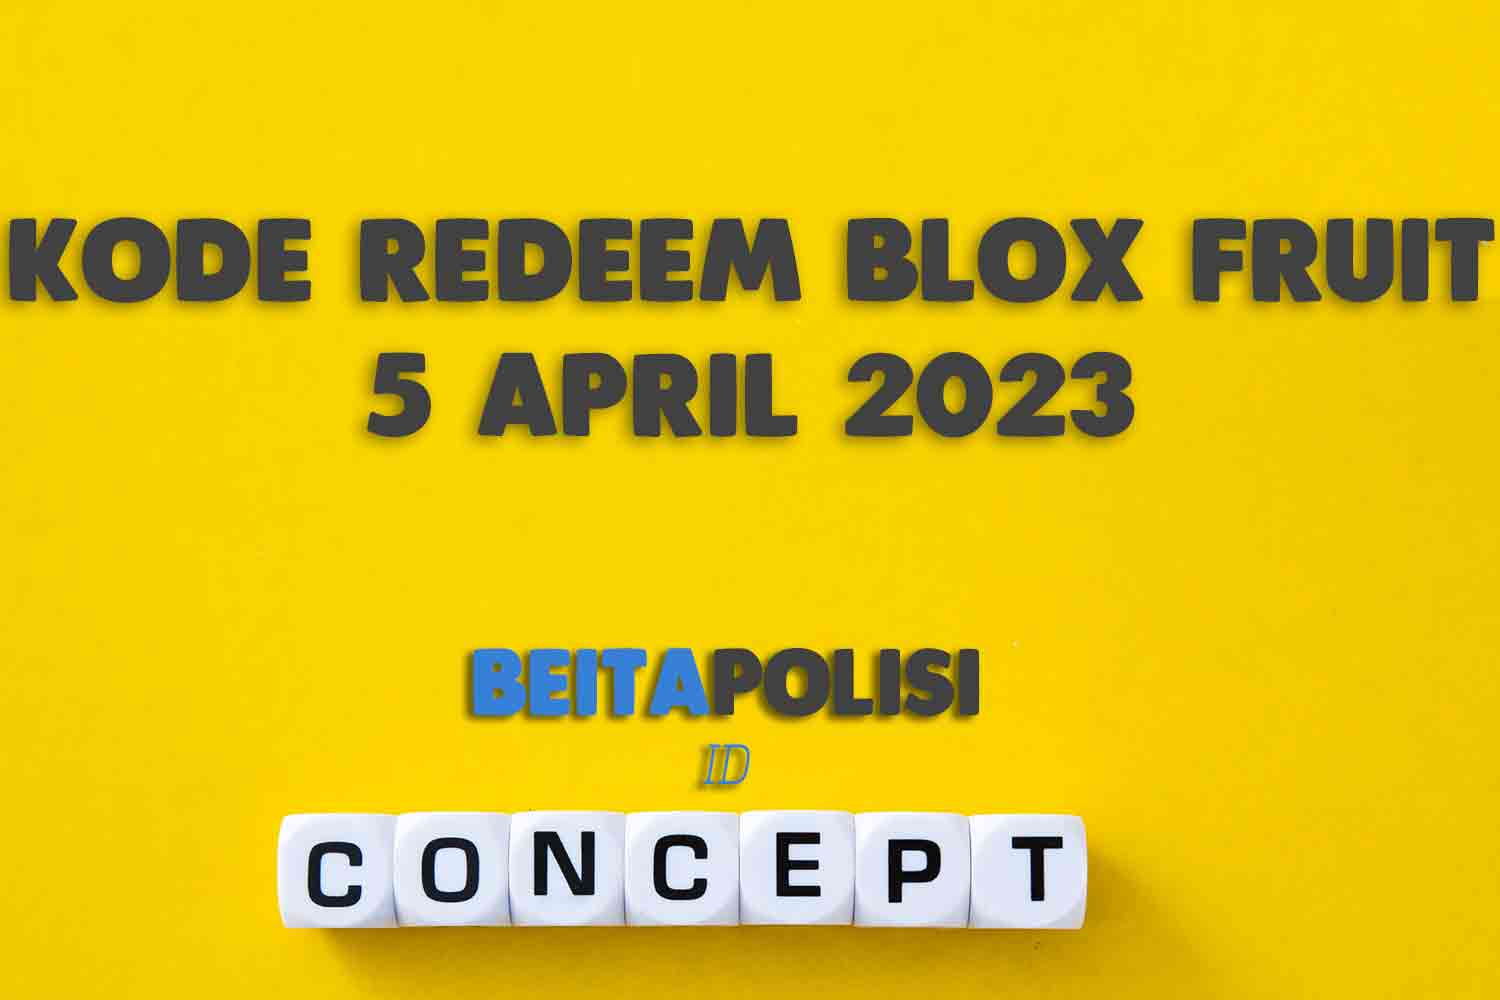 Kode Redeem Blox Fruit 5 April 2023